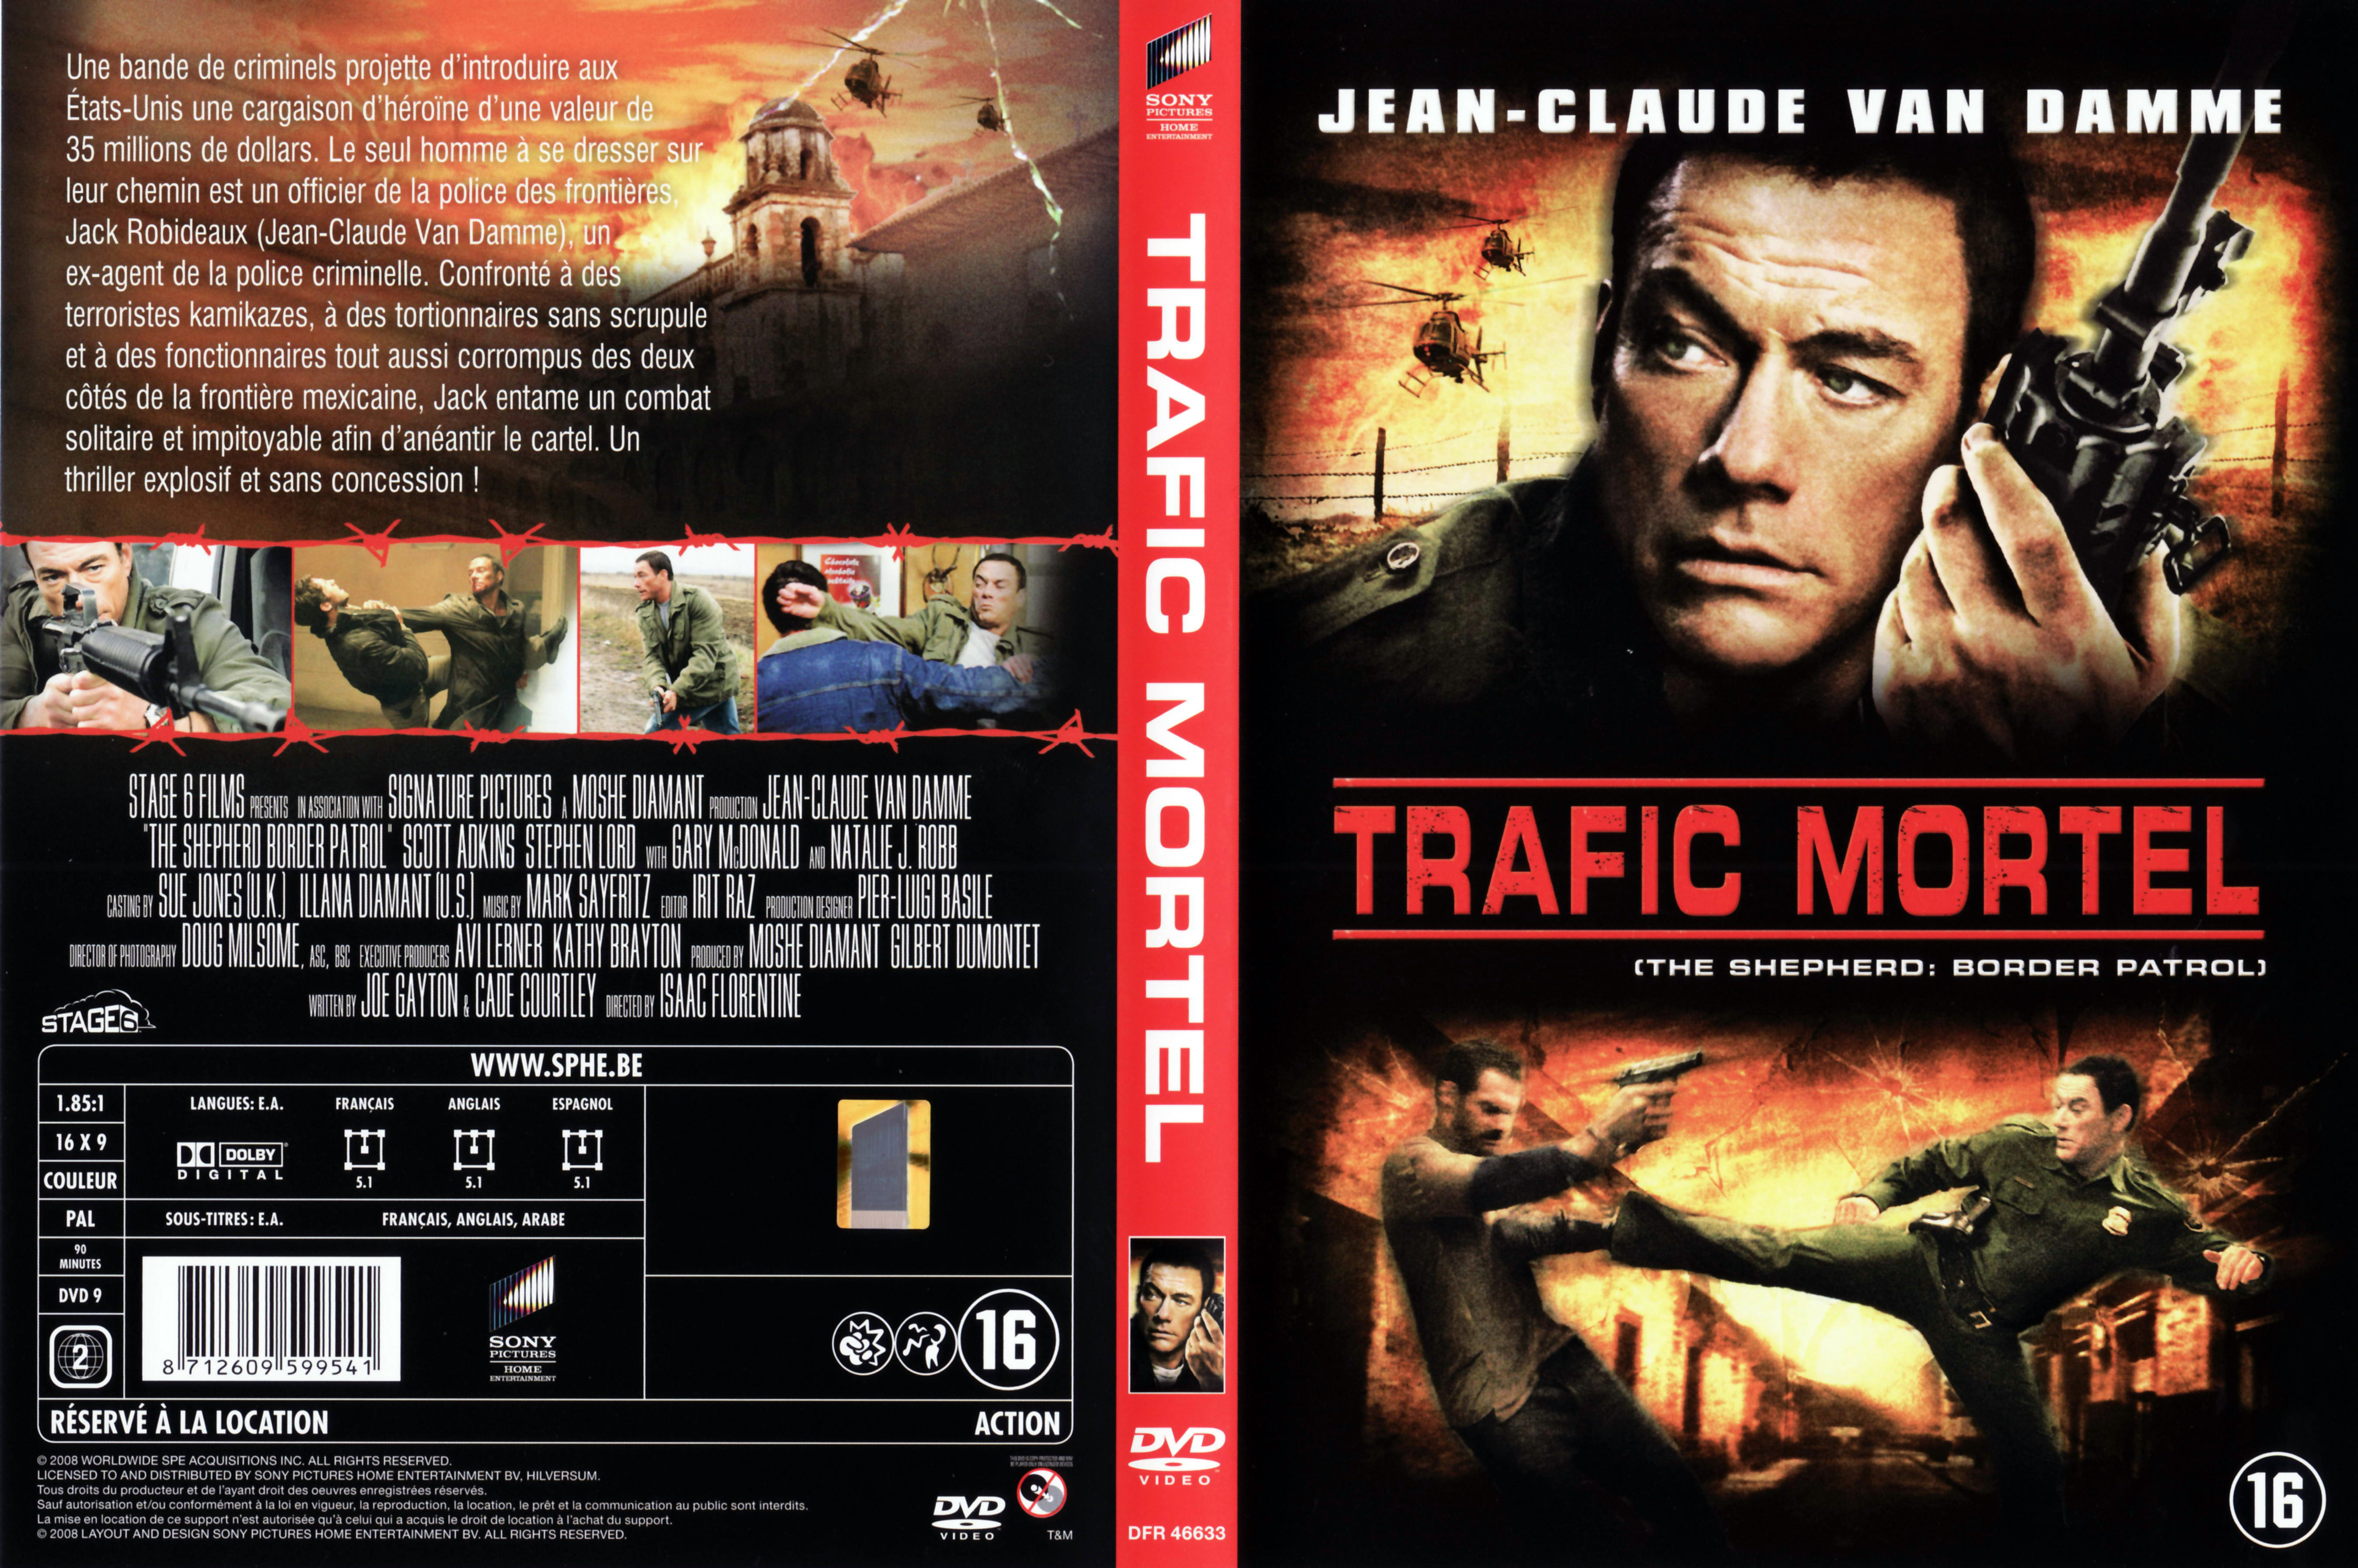 Jaquette DVD Trafic mortel v2